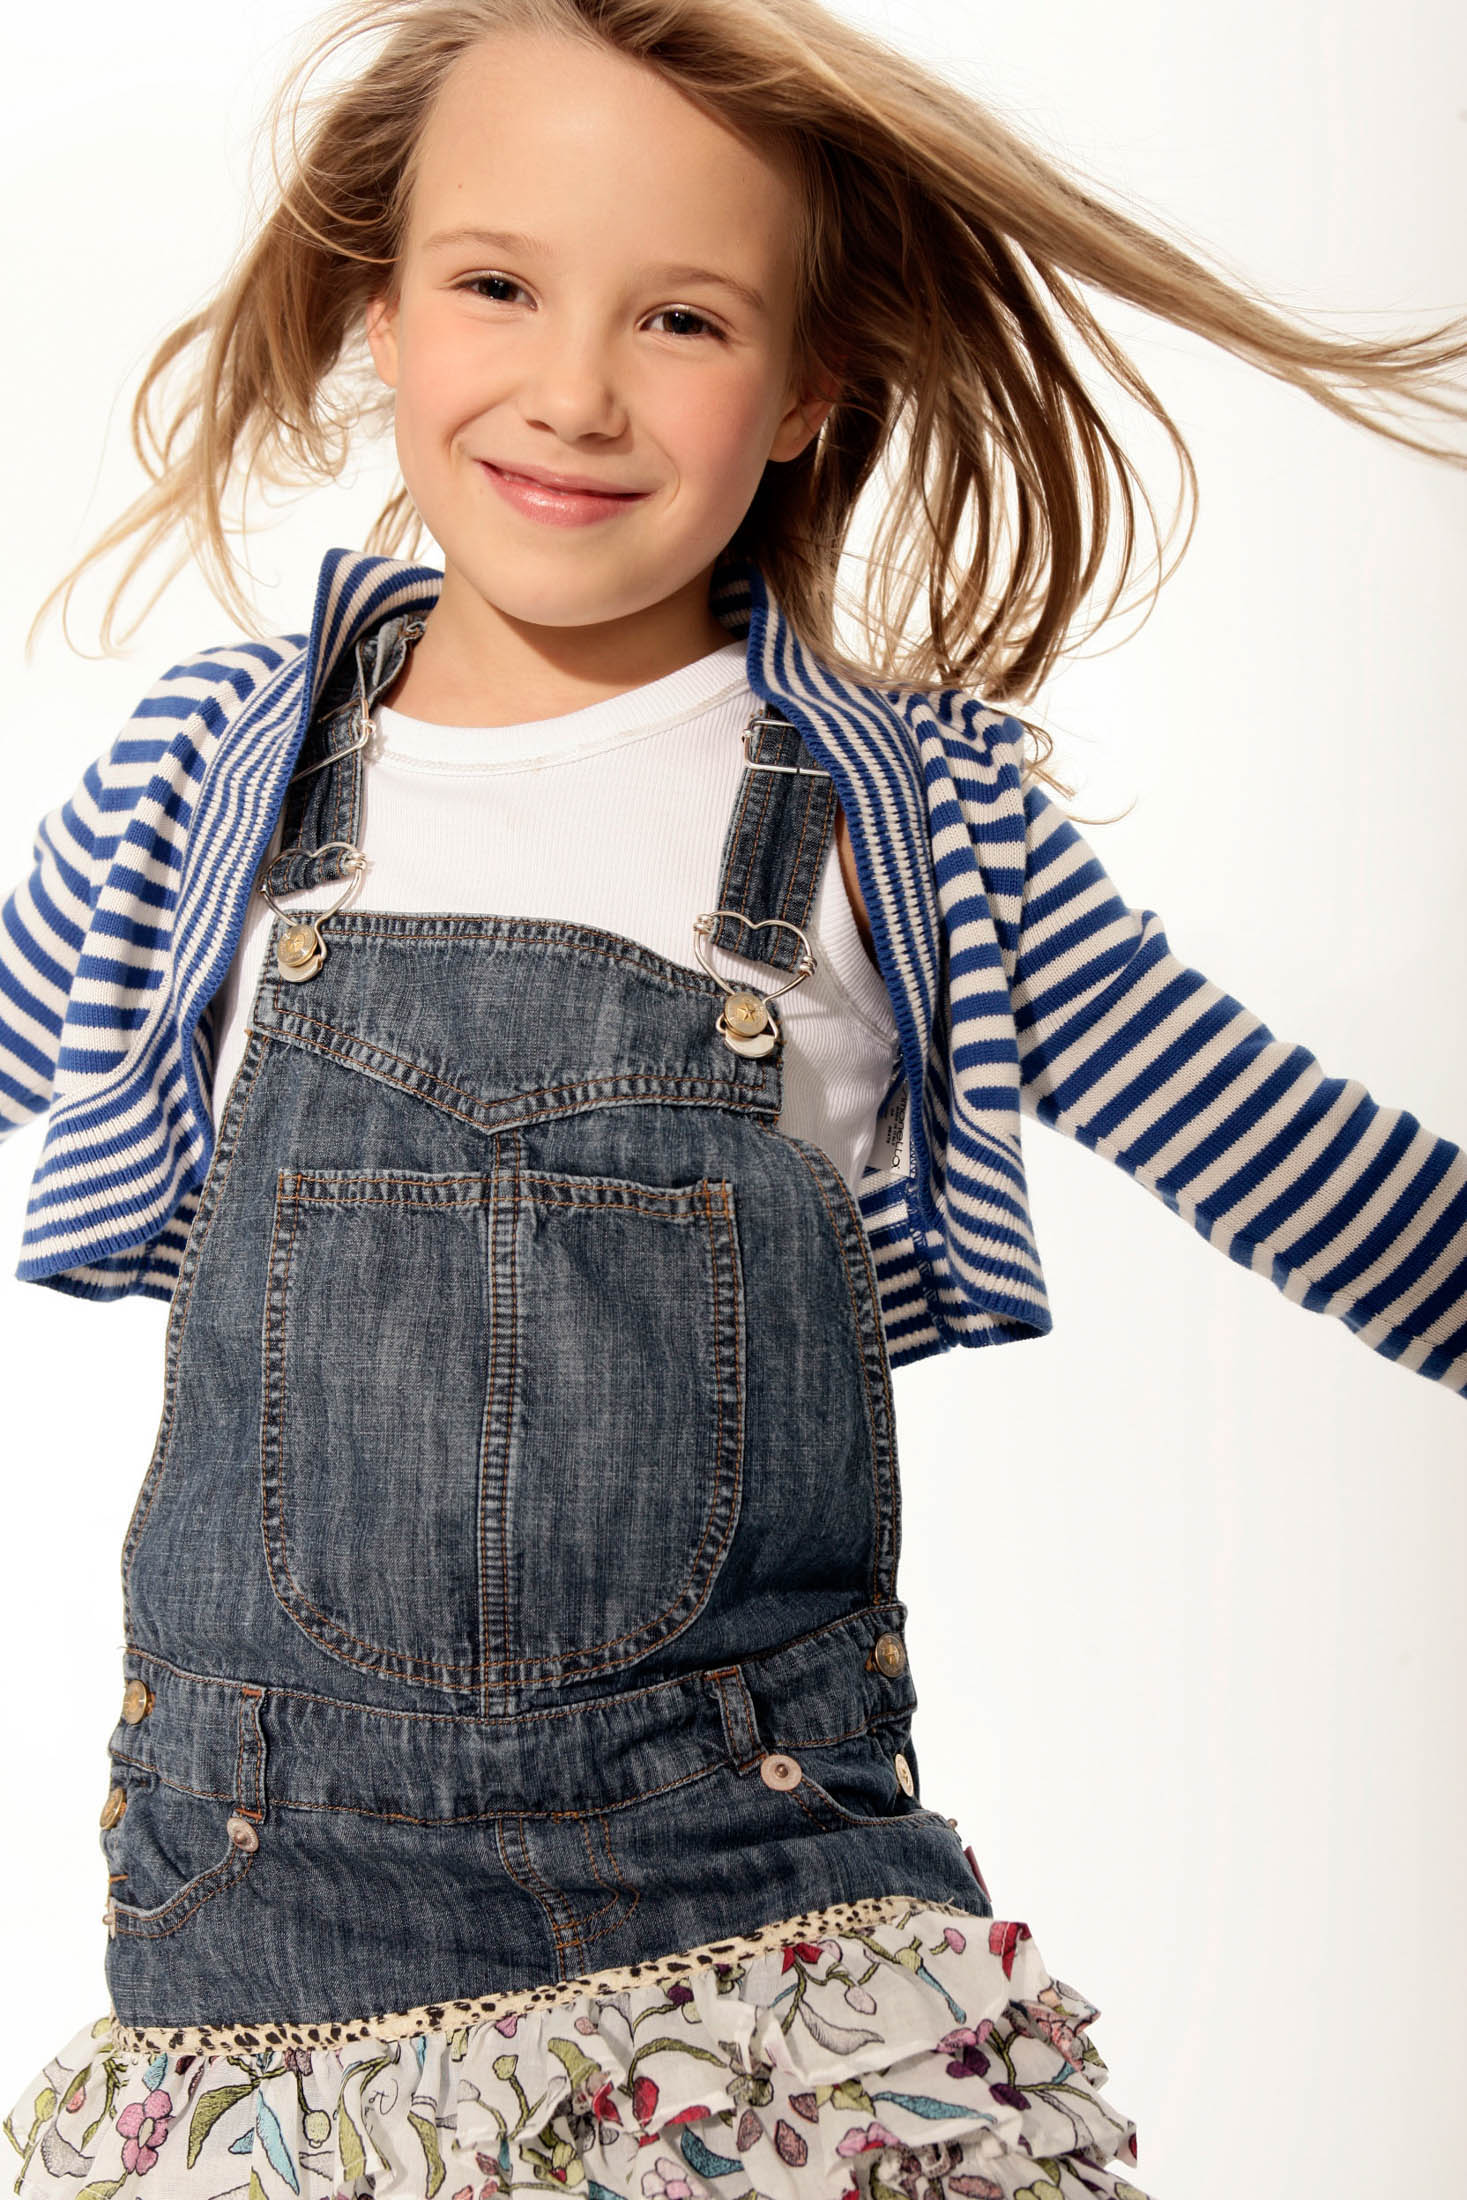 Ein fröhliches junges Mädchen mit wallendem Haar, einem gestreiften Hemd, einem Jeans-Overall und einem geblümten Rock, wirbelt fröhlich vor einem weißen Hintergrund herum. © Fotografie Tomas Rodriguez